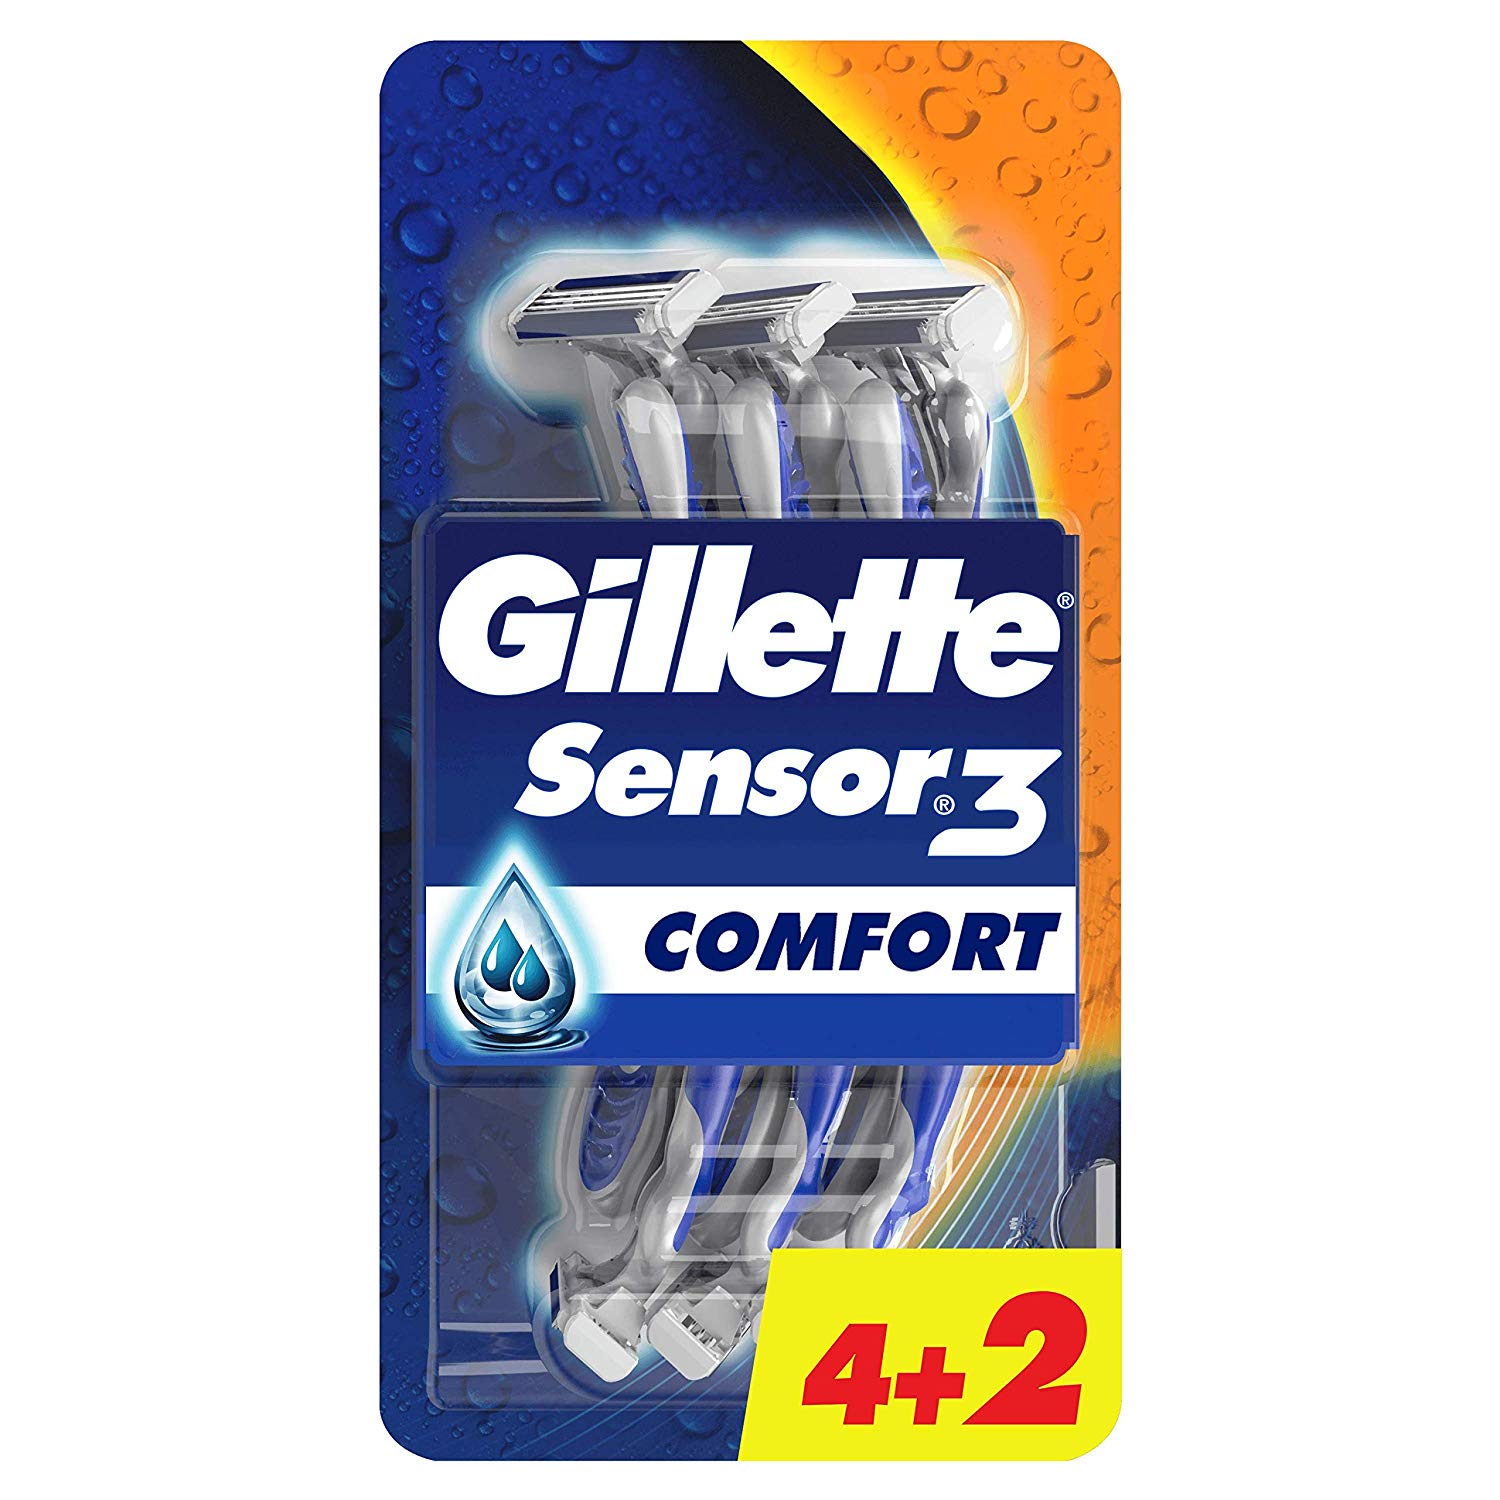 6 cuchillas Gillette Sensor3 Comfort solo 5,9€